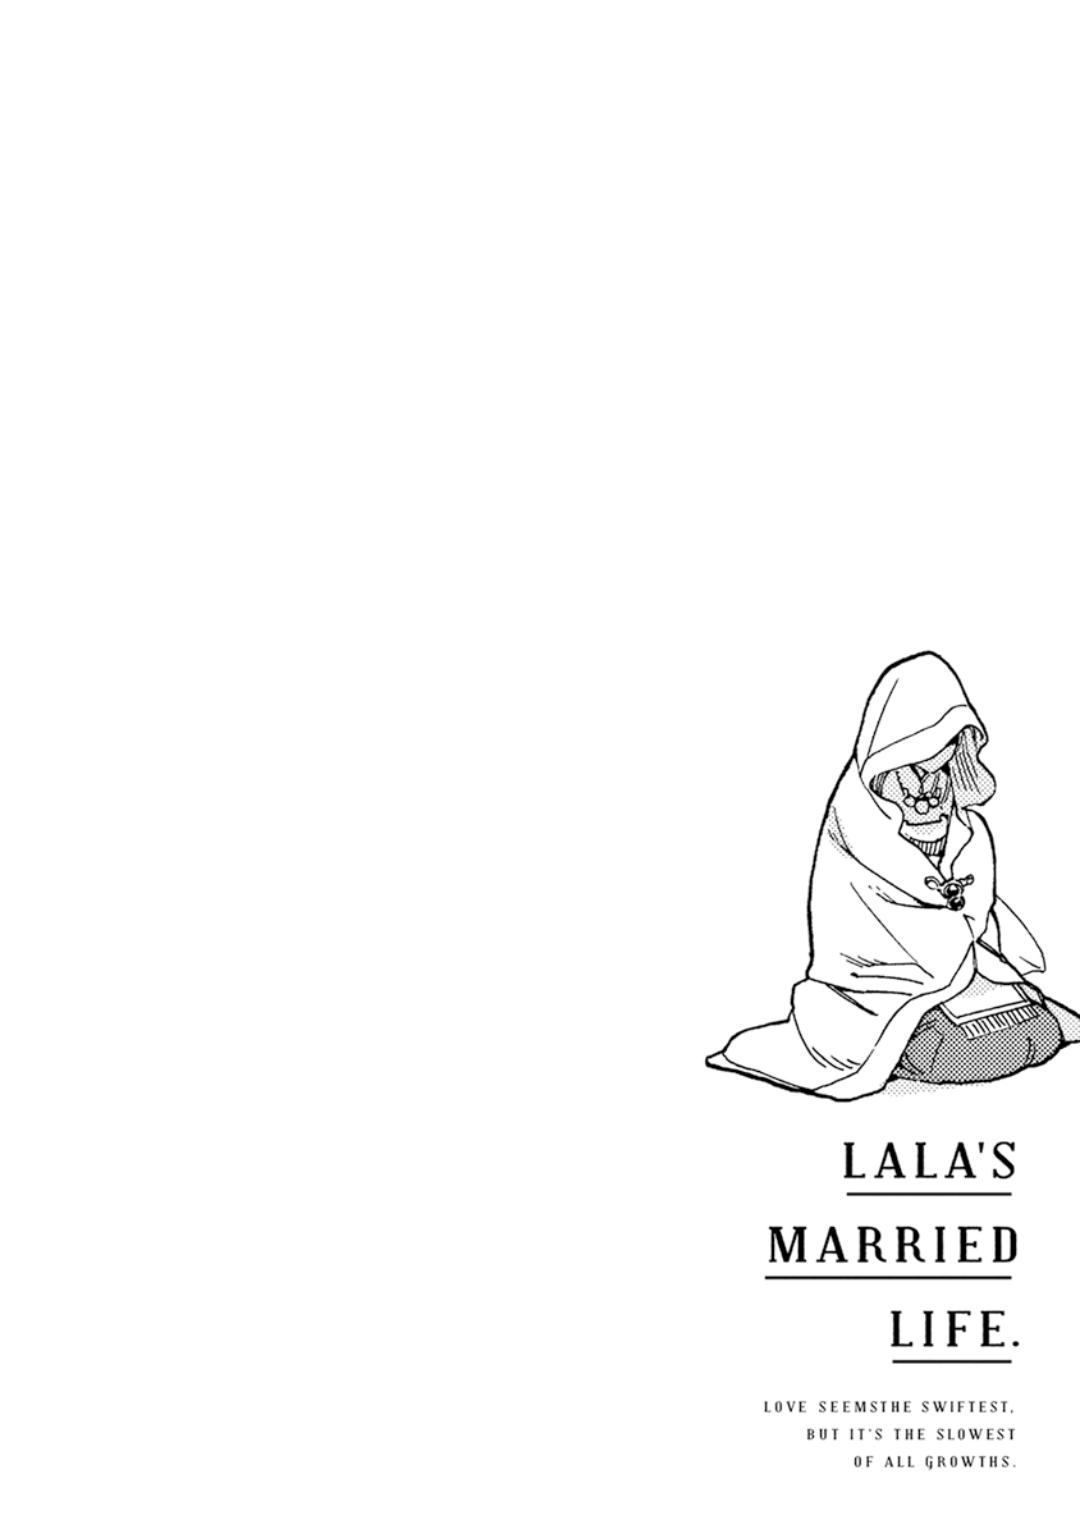 Lala no Kekkon 1 - Lala's Married Life. 33